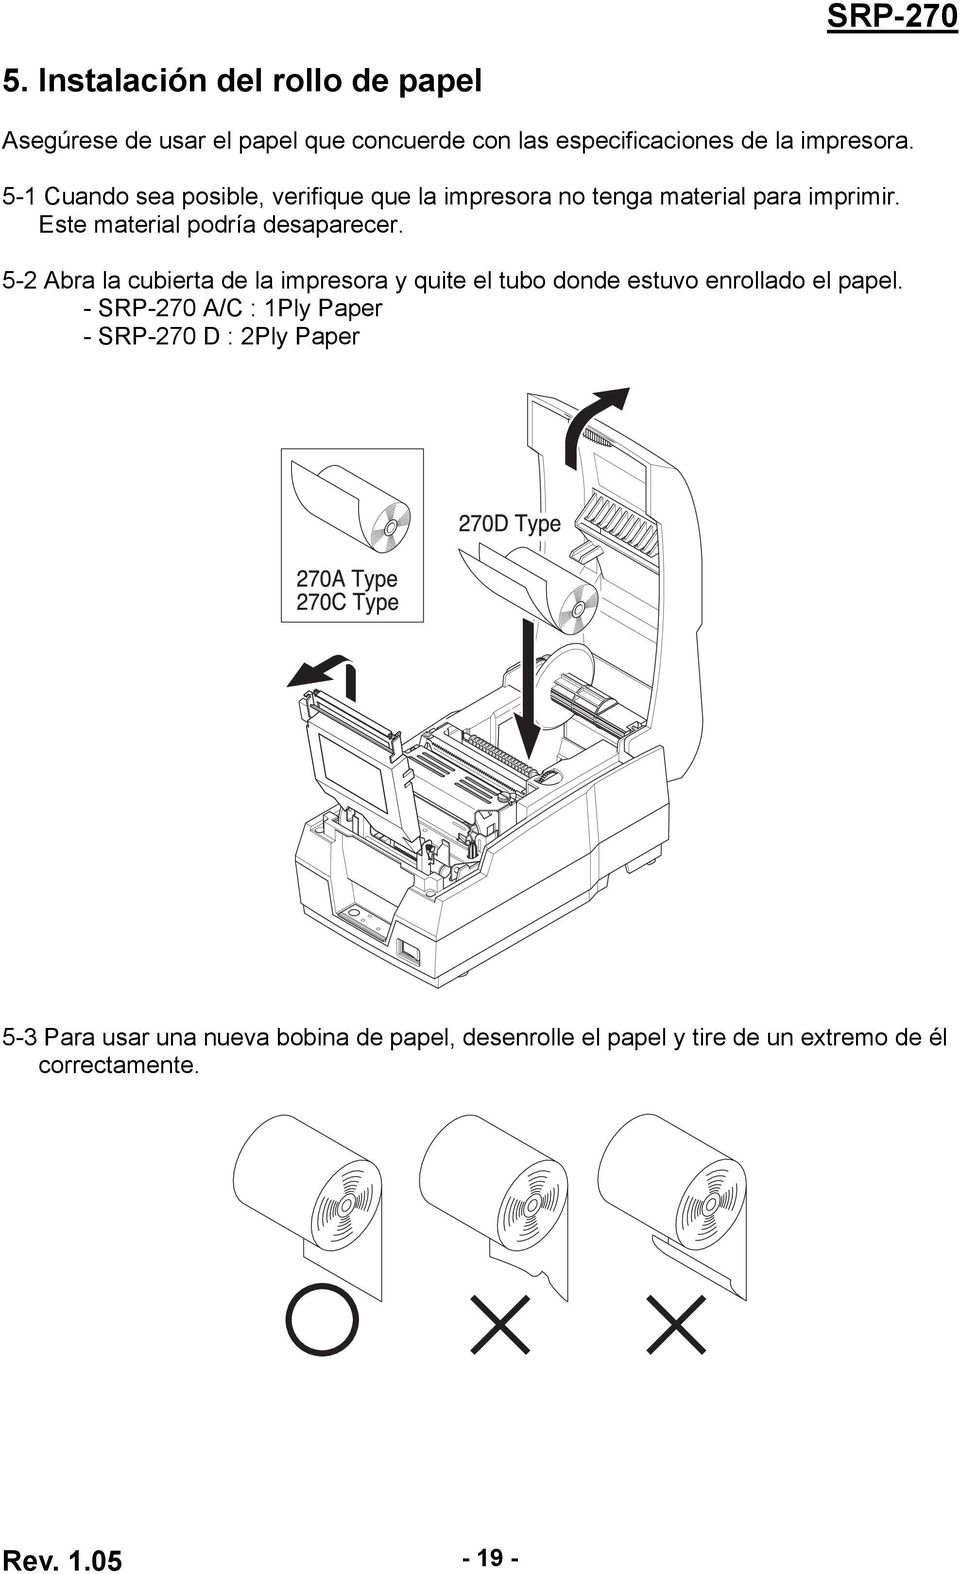 5-2 Abra la cubierta de la impresora y quite el tubo donde estuvo enrollado el papel.